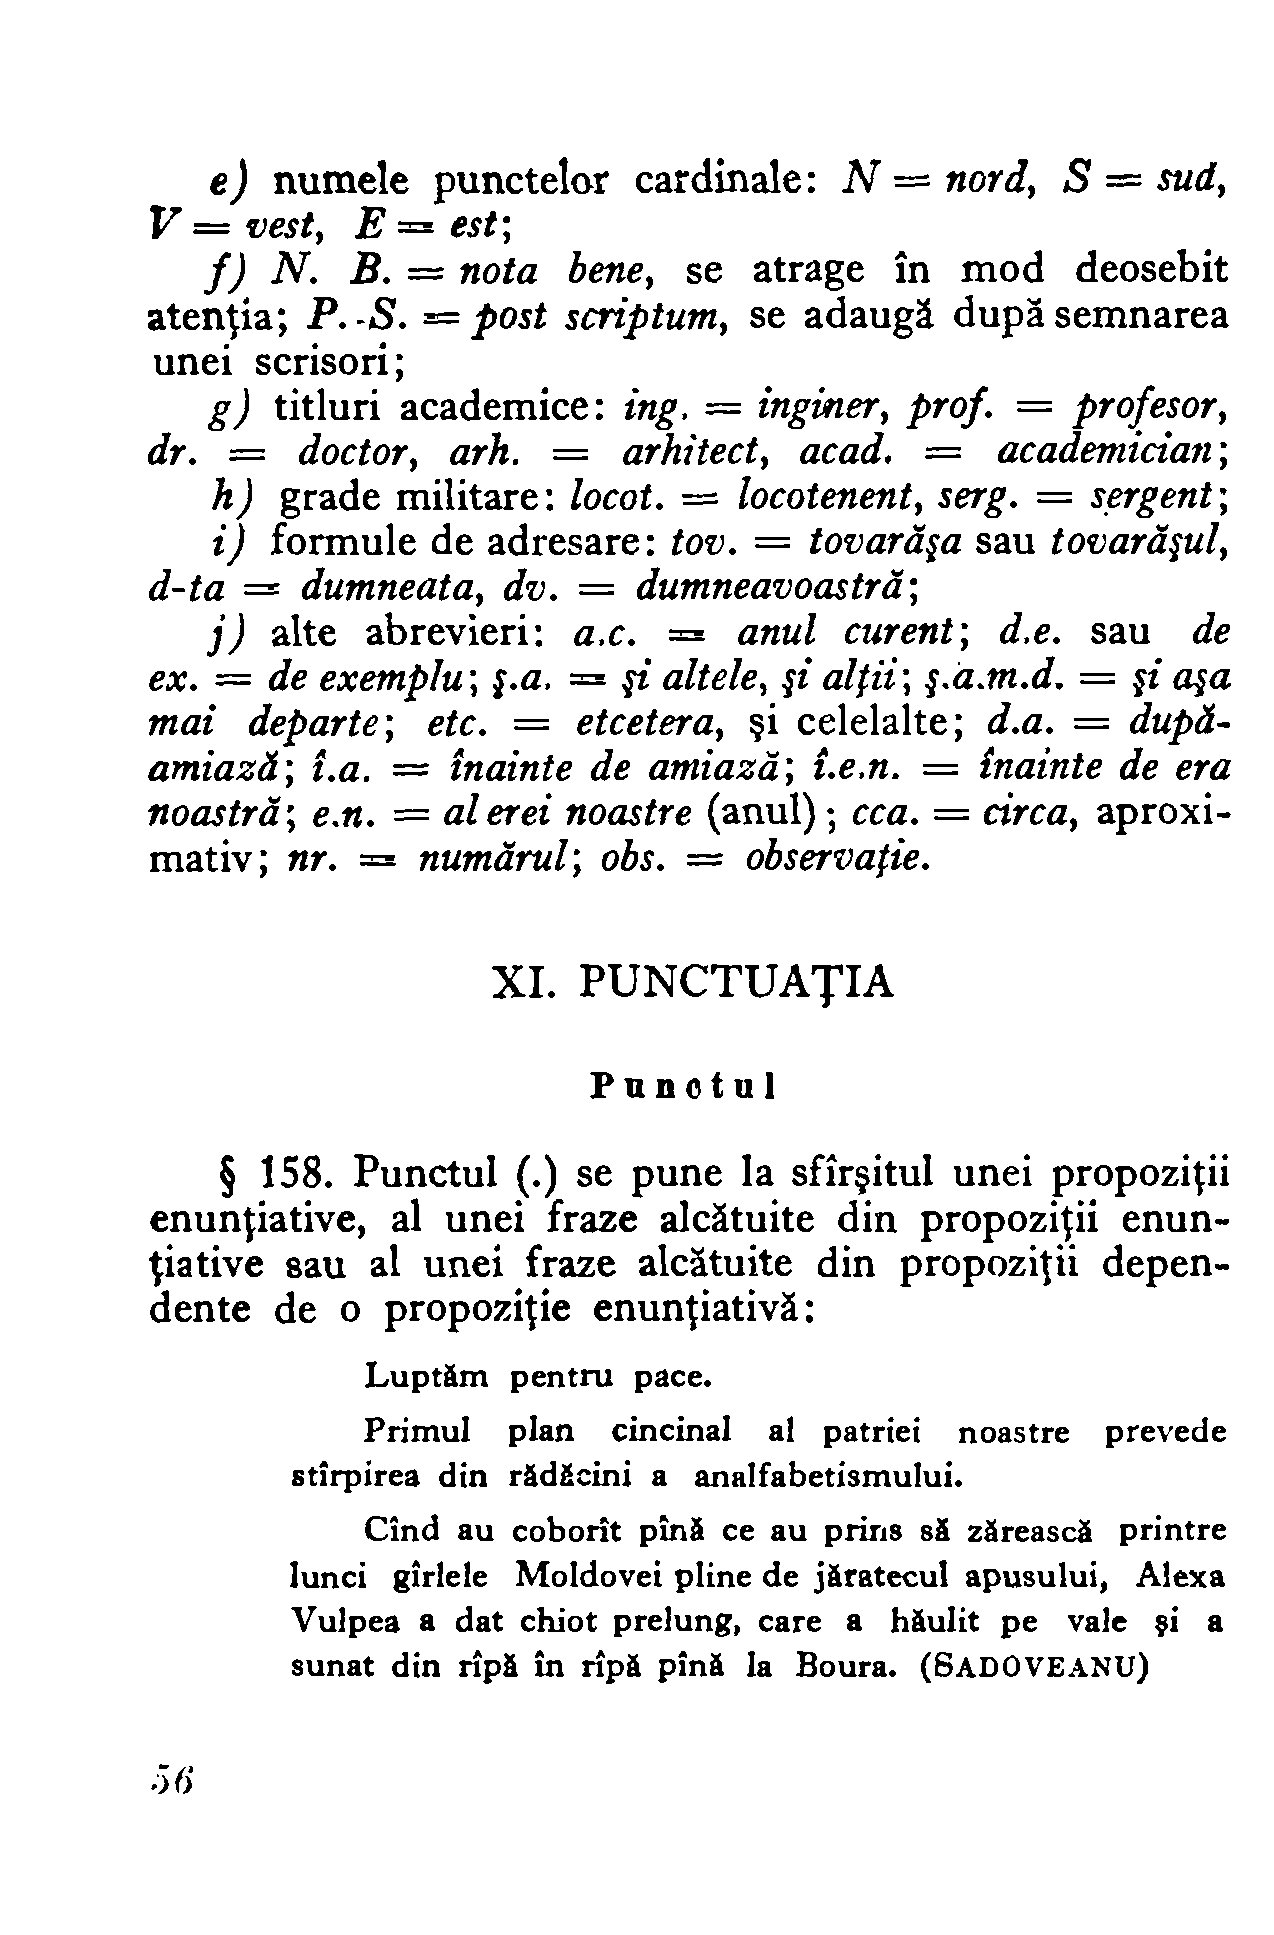 1954 - Mic dicționar ortografic (54).png